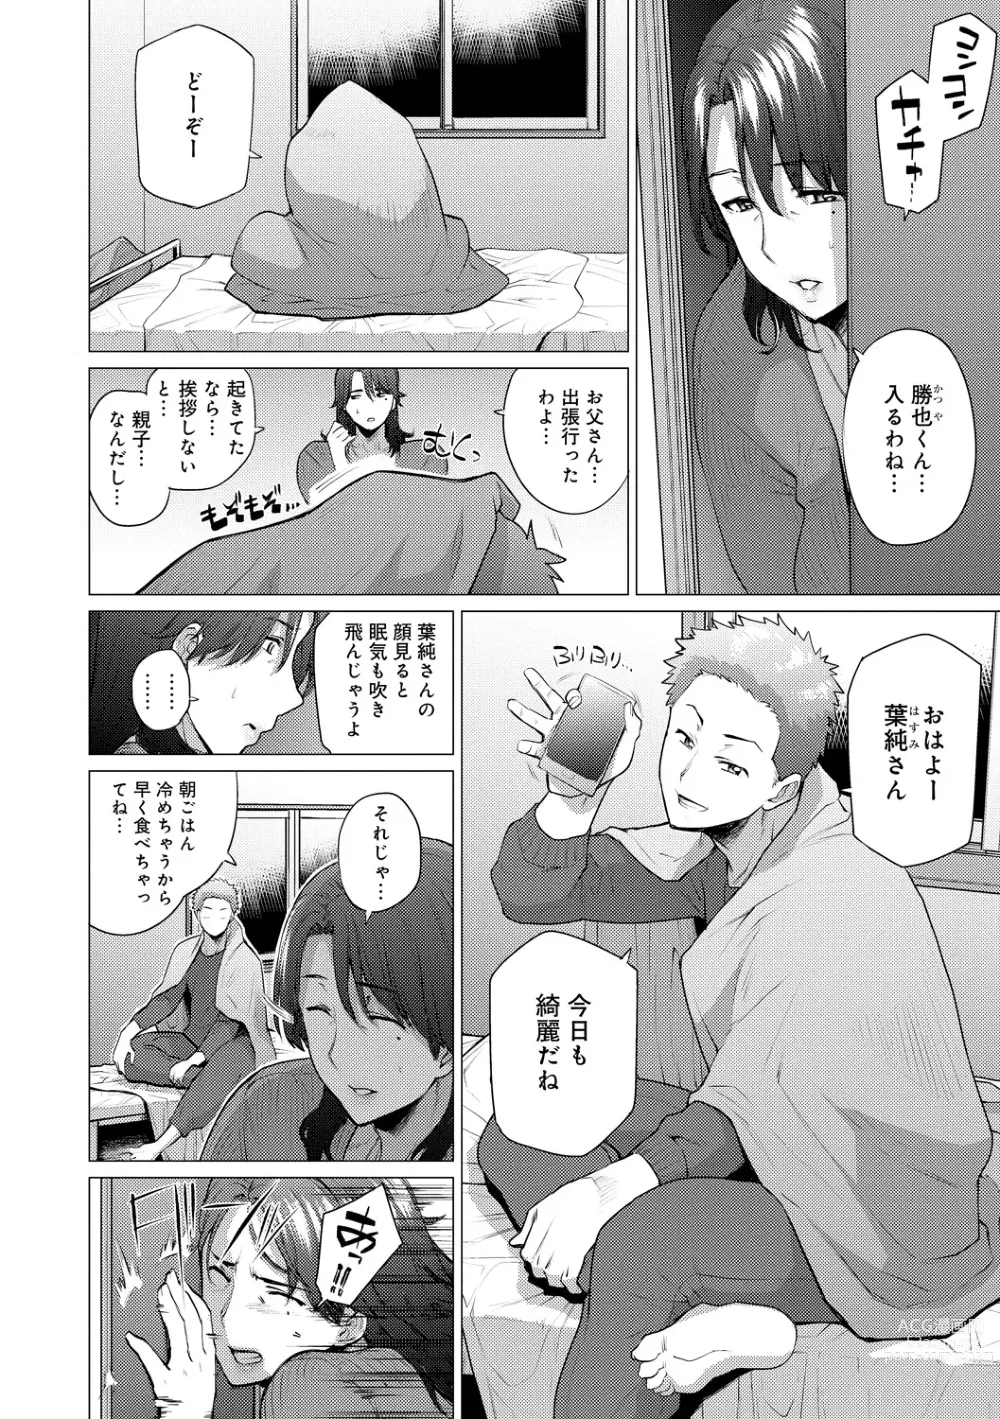 Page 6 of manga Enji ni Somaru